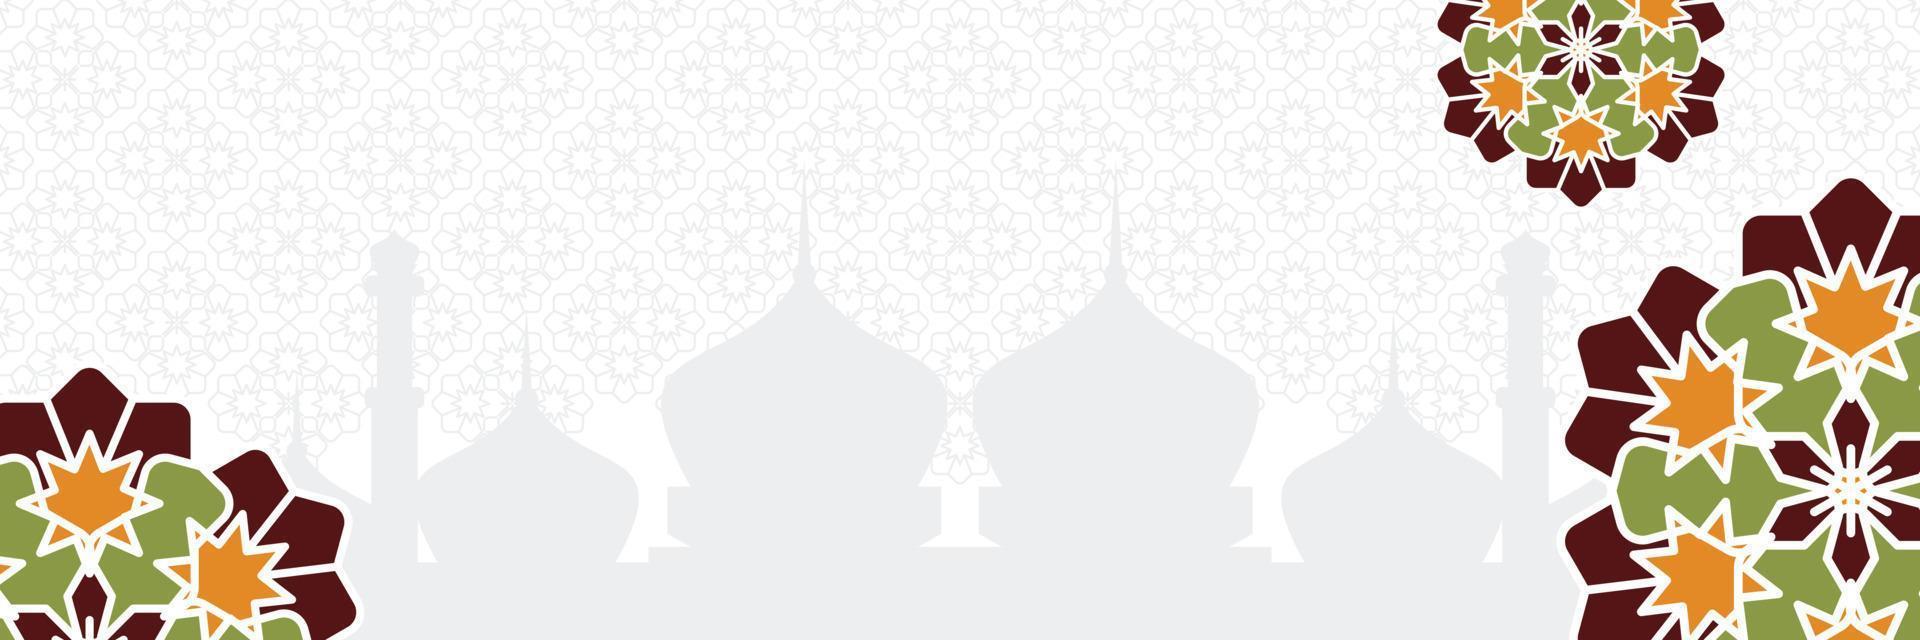 islâmico fundo, com lindo mandala ornamento. vetor modelo para bandeiras, cumprimento cartões para islâmico feriados, eid al fitr, ramadã, eid al adha